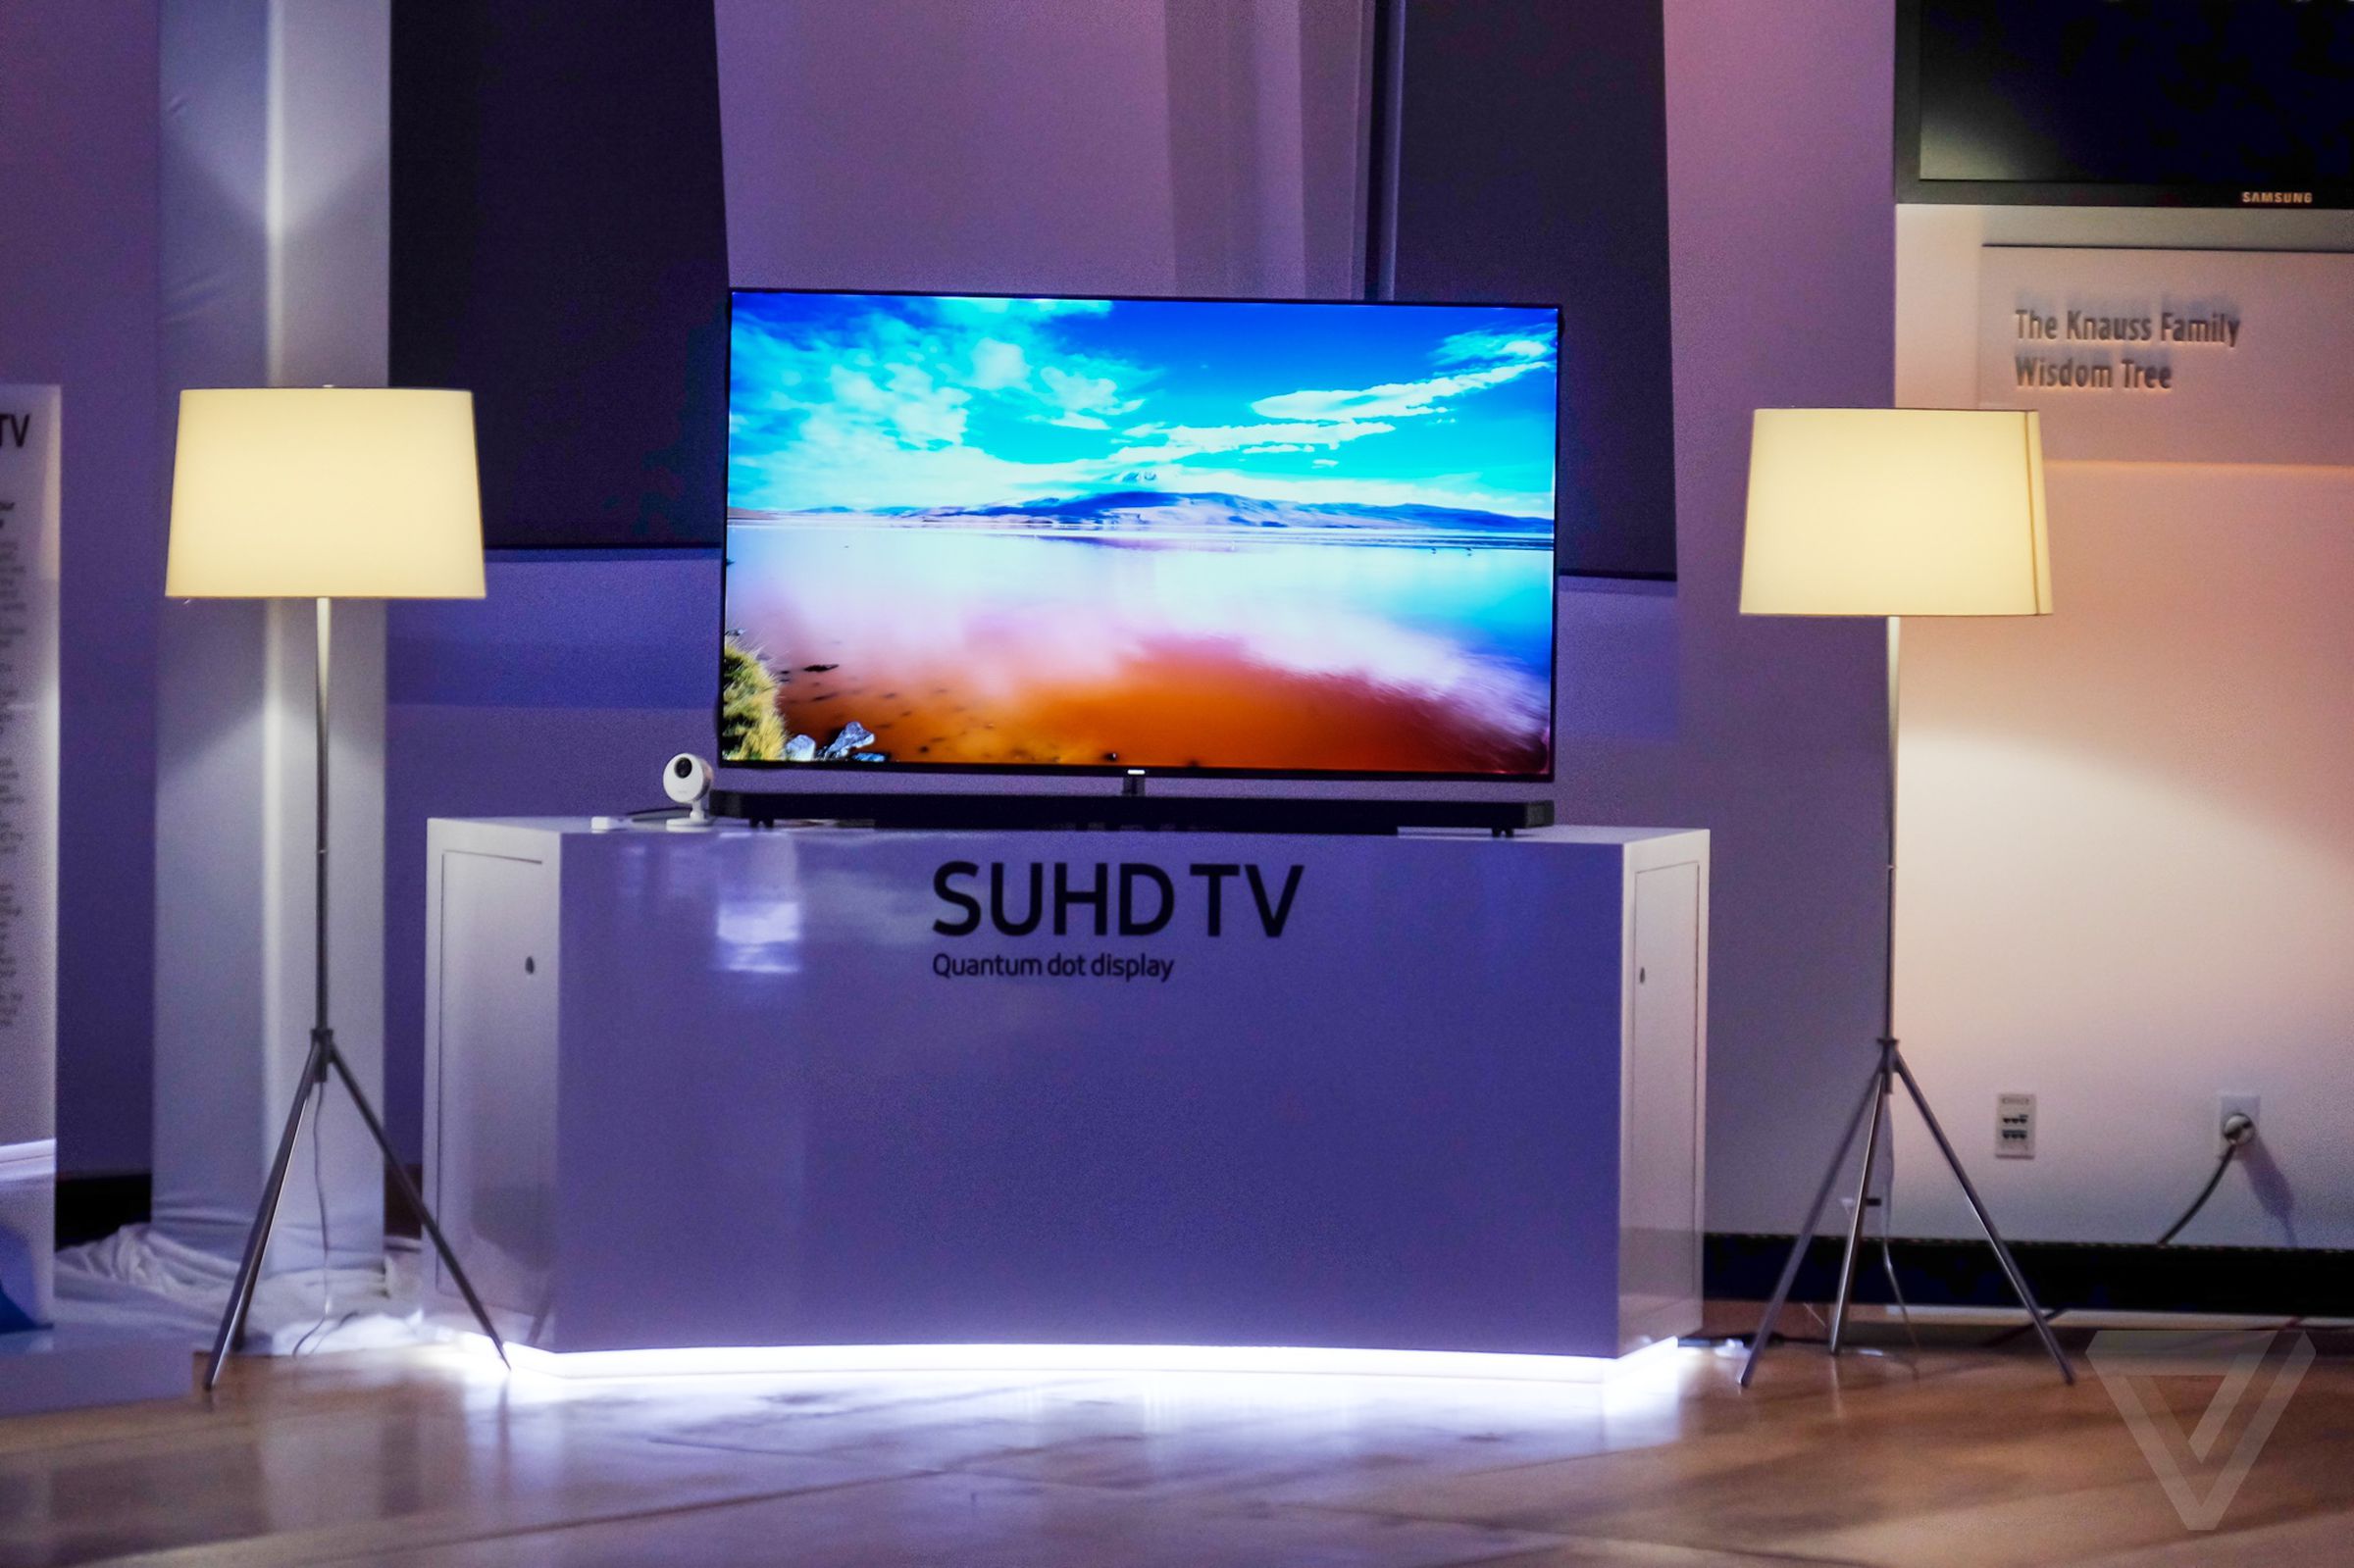 Samsung 2016 SUHD TV photos